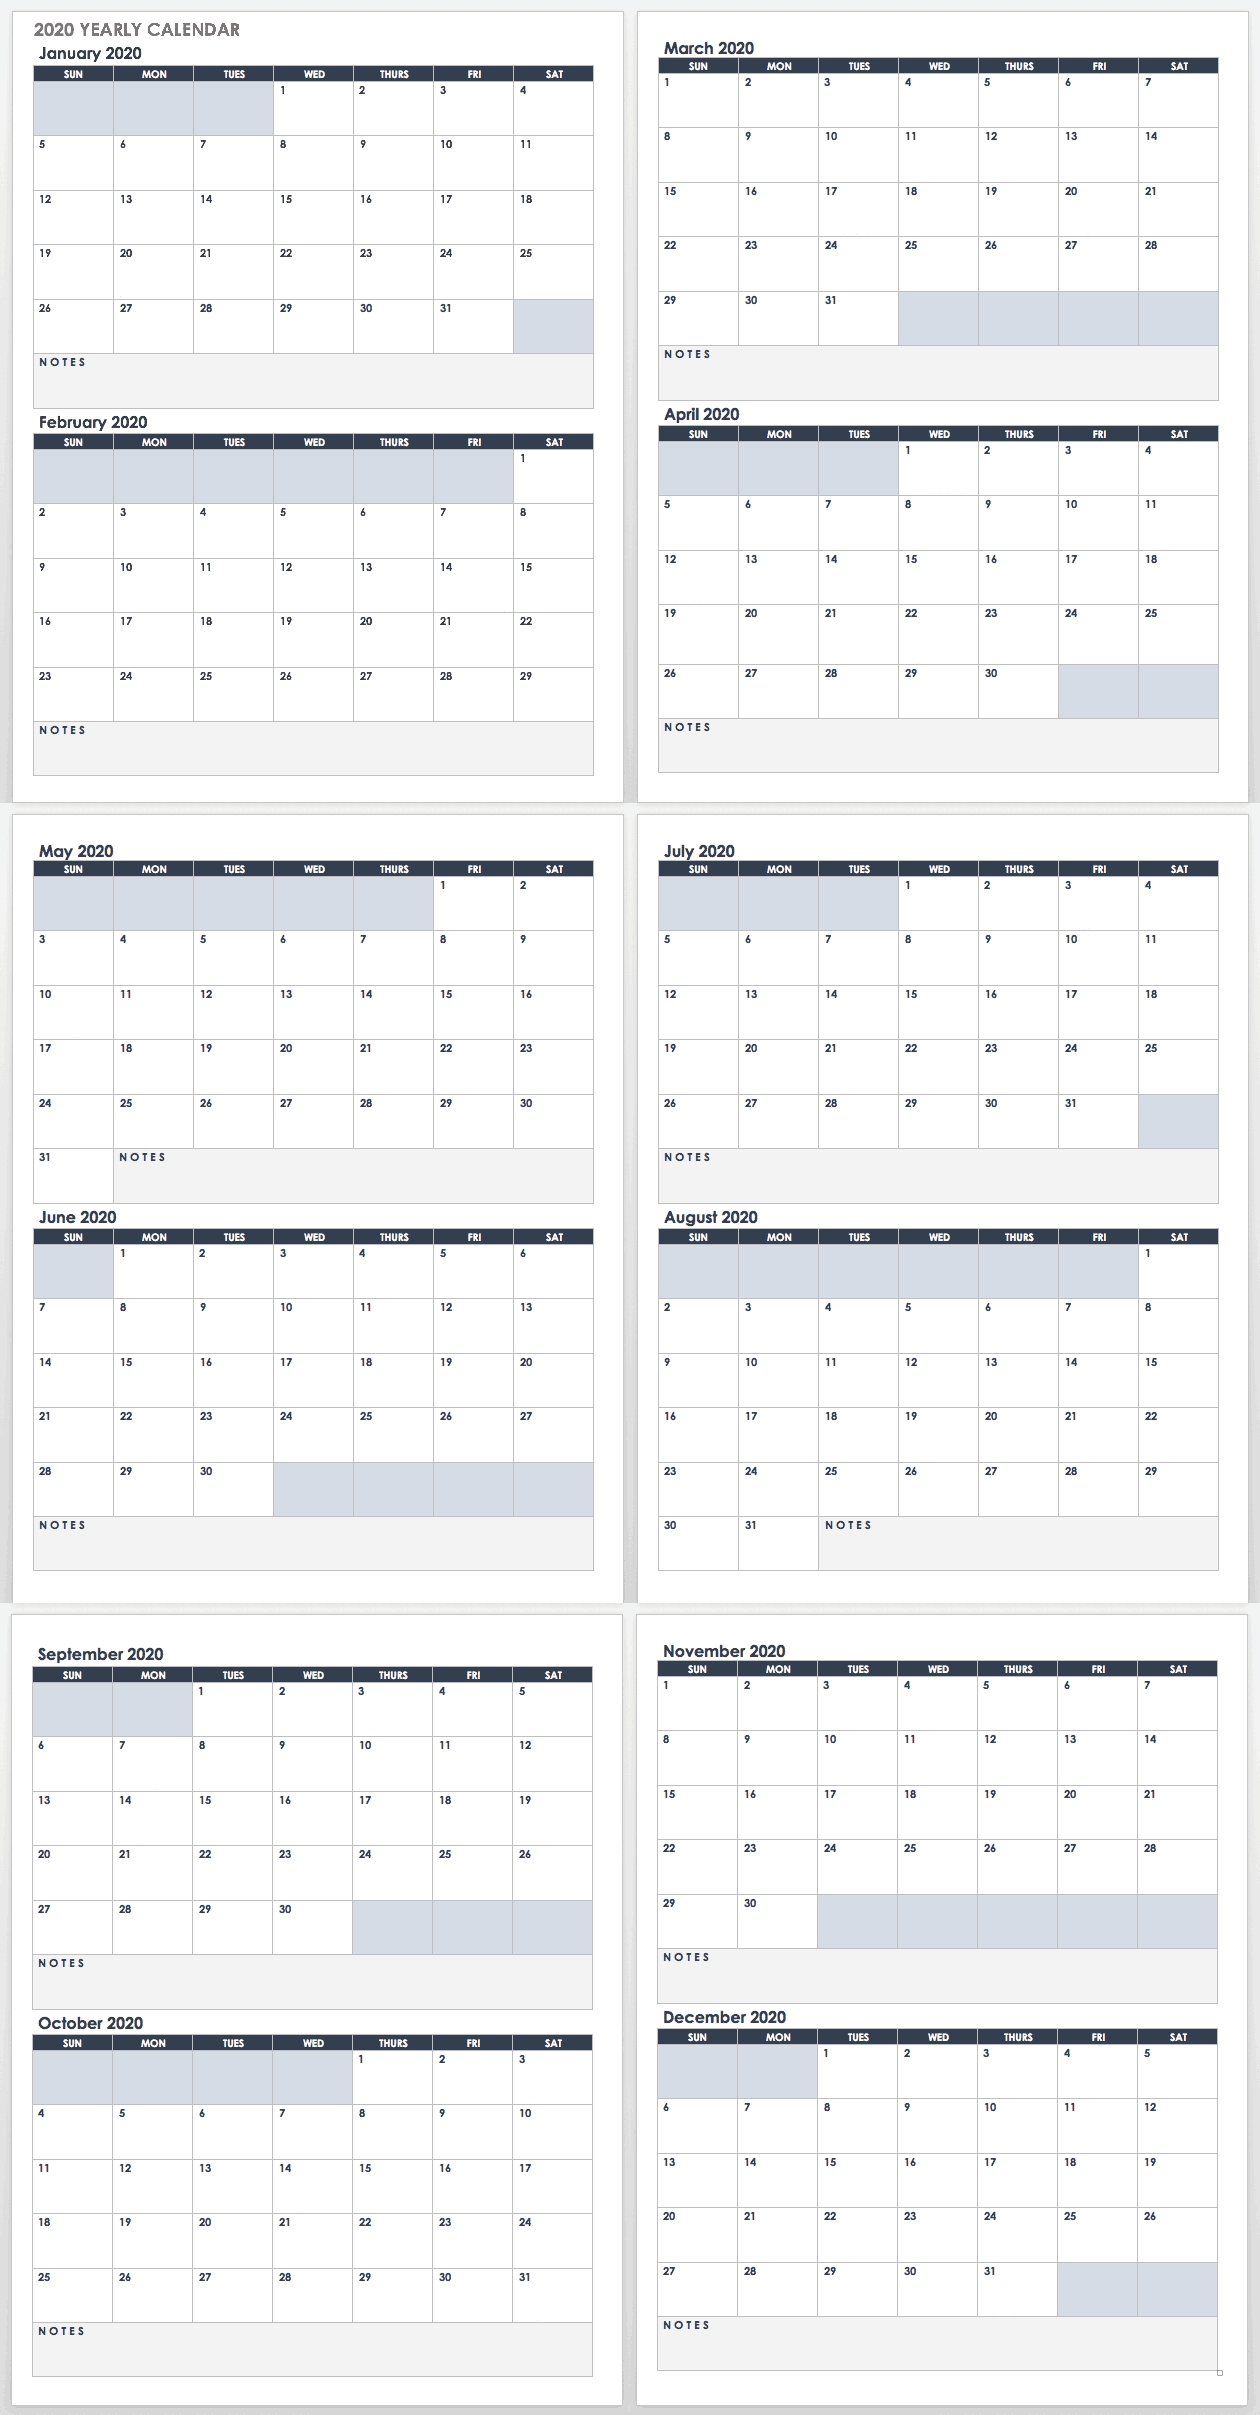 2020 Employee Attendance Calendar Free | Calendar For Planning-Printable Employee Attendance Calendar 2021